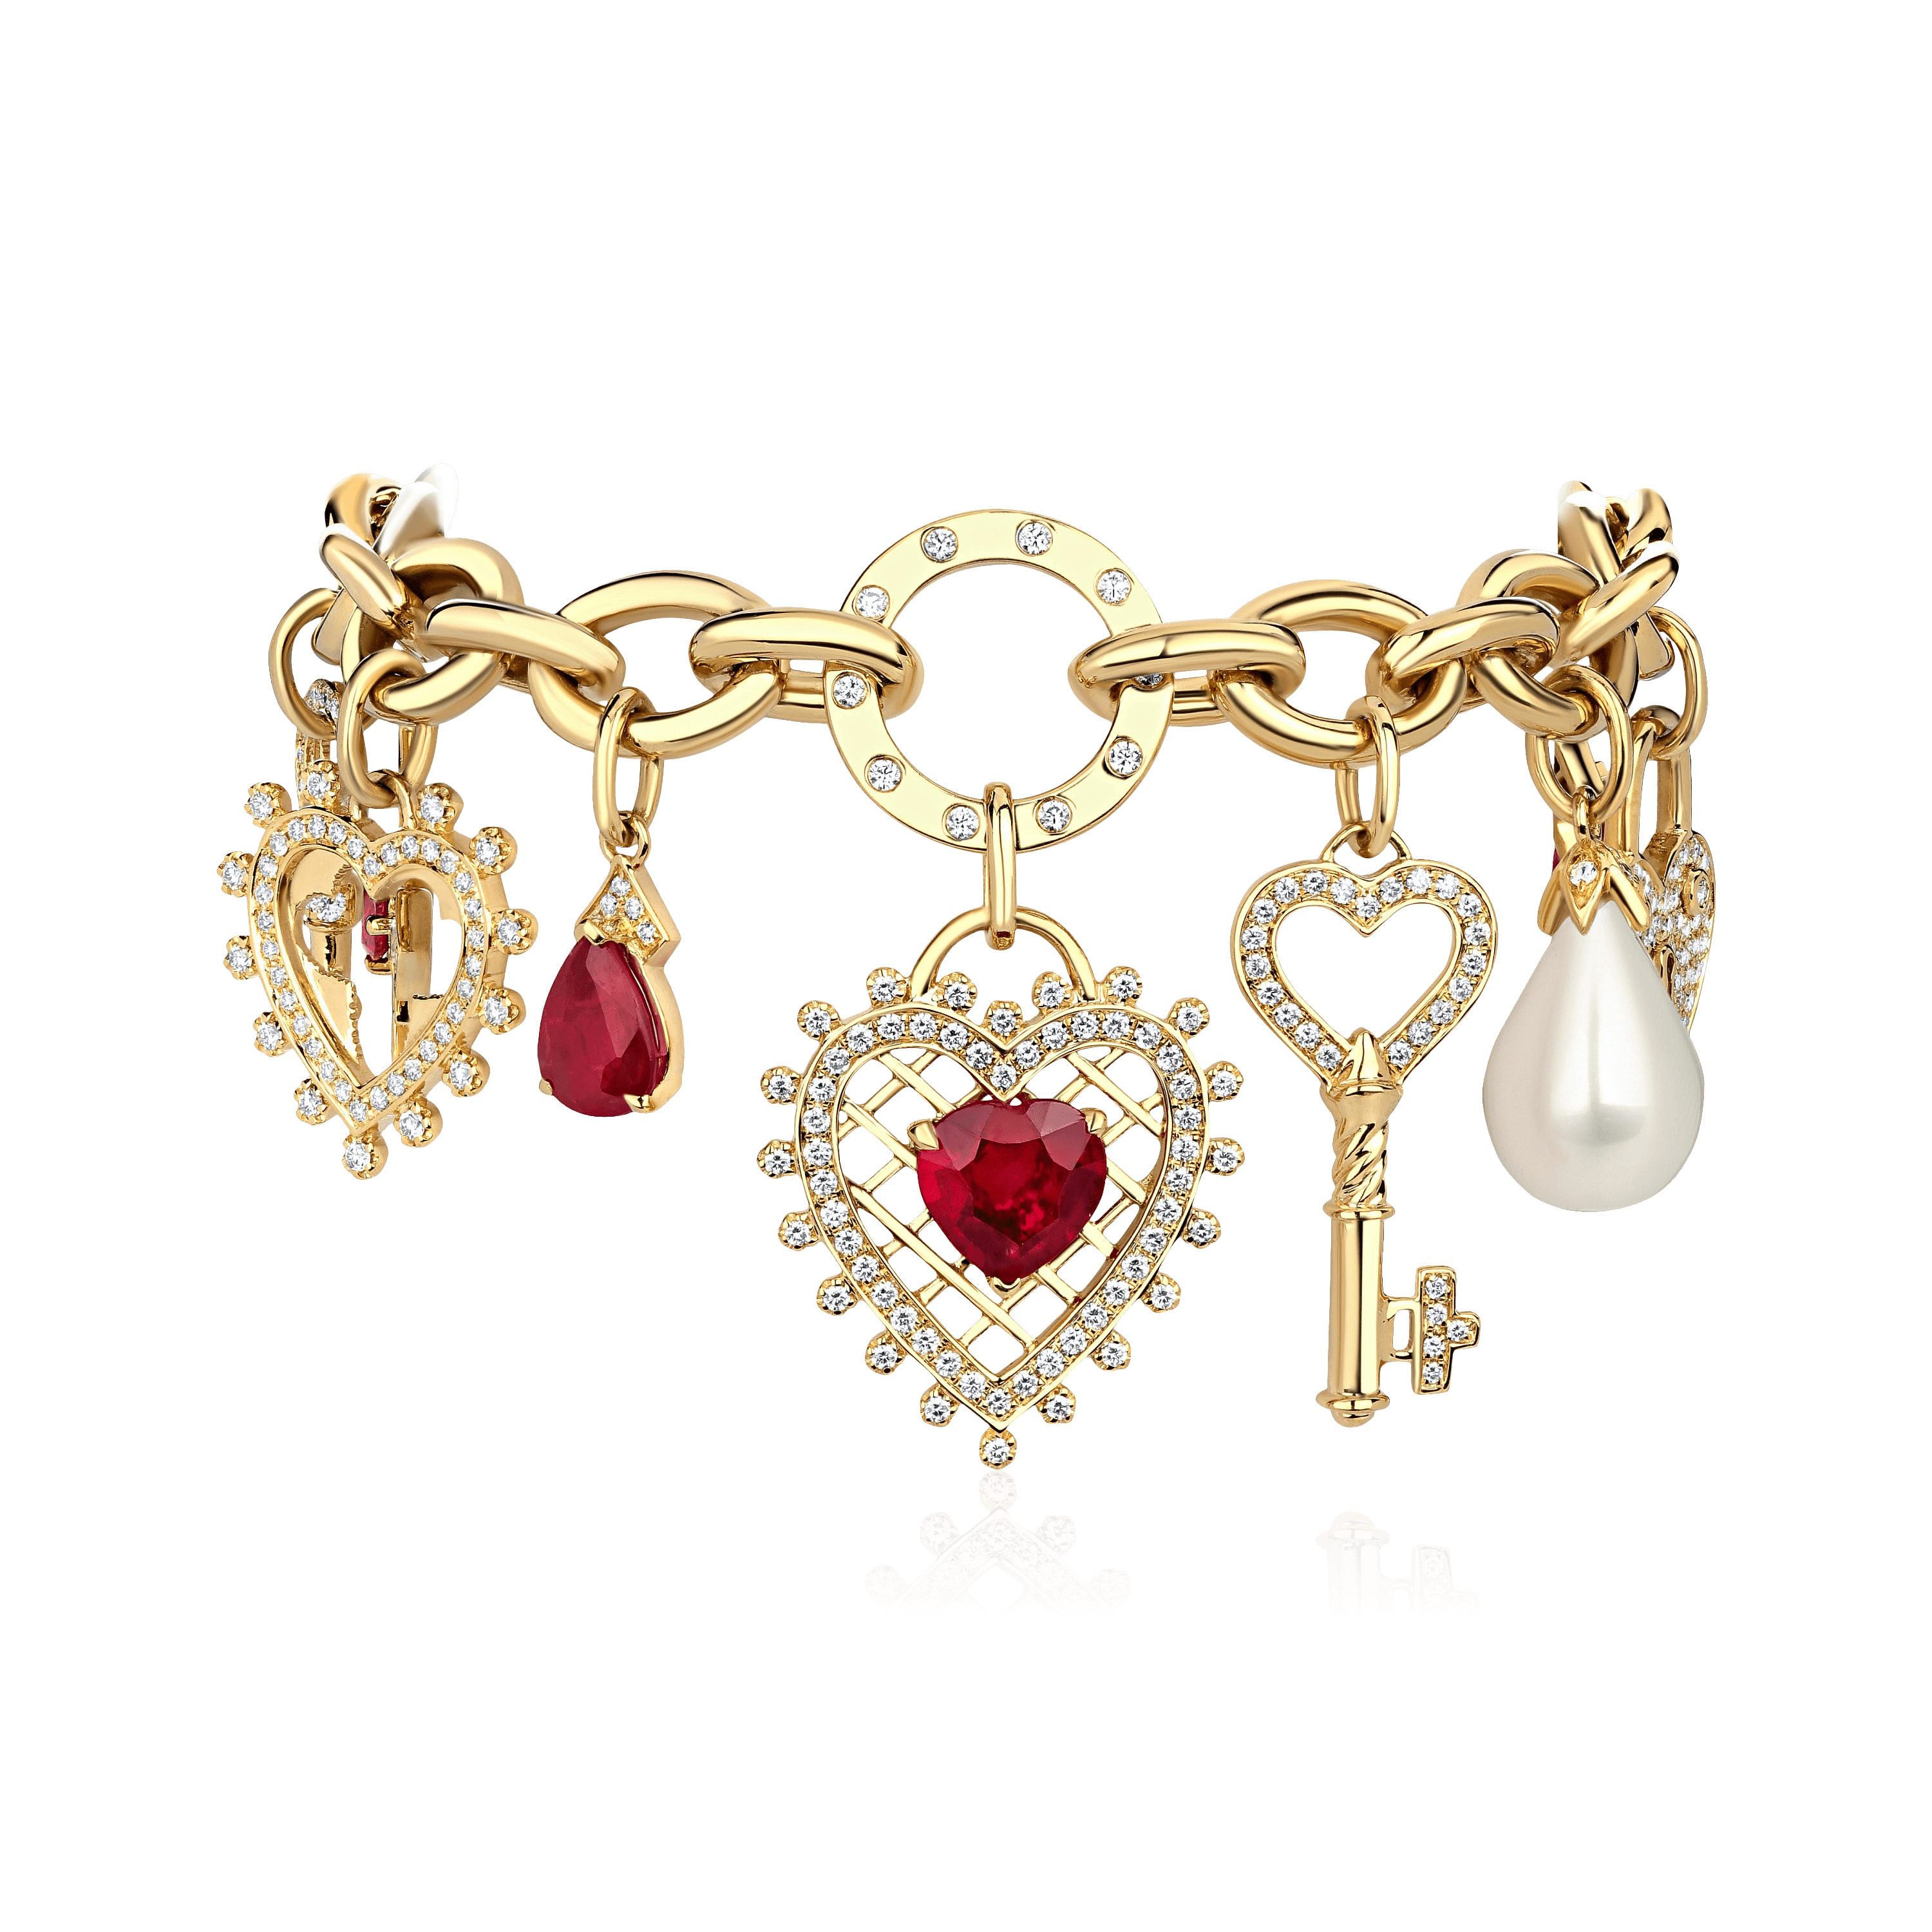 Браслет с рубином, жемчугом, бриллиантами из желтого золота 750 пробы (арт. 99236)